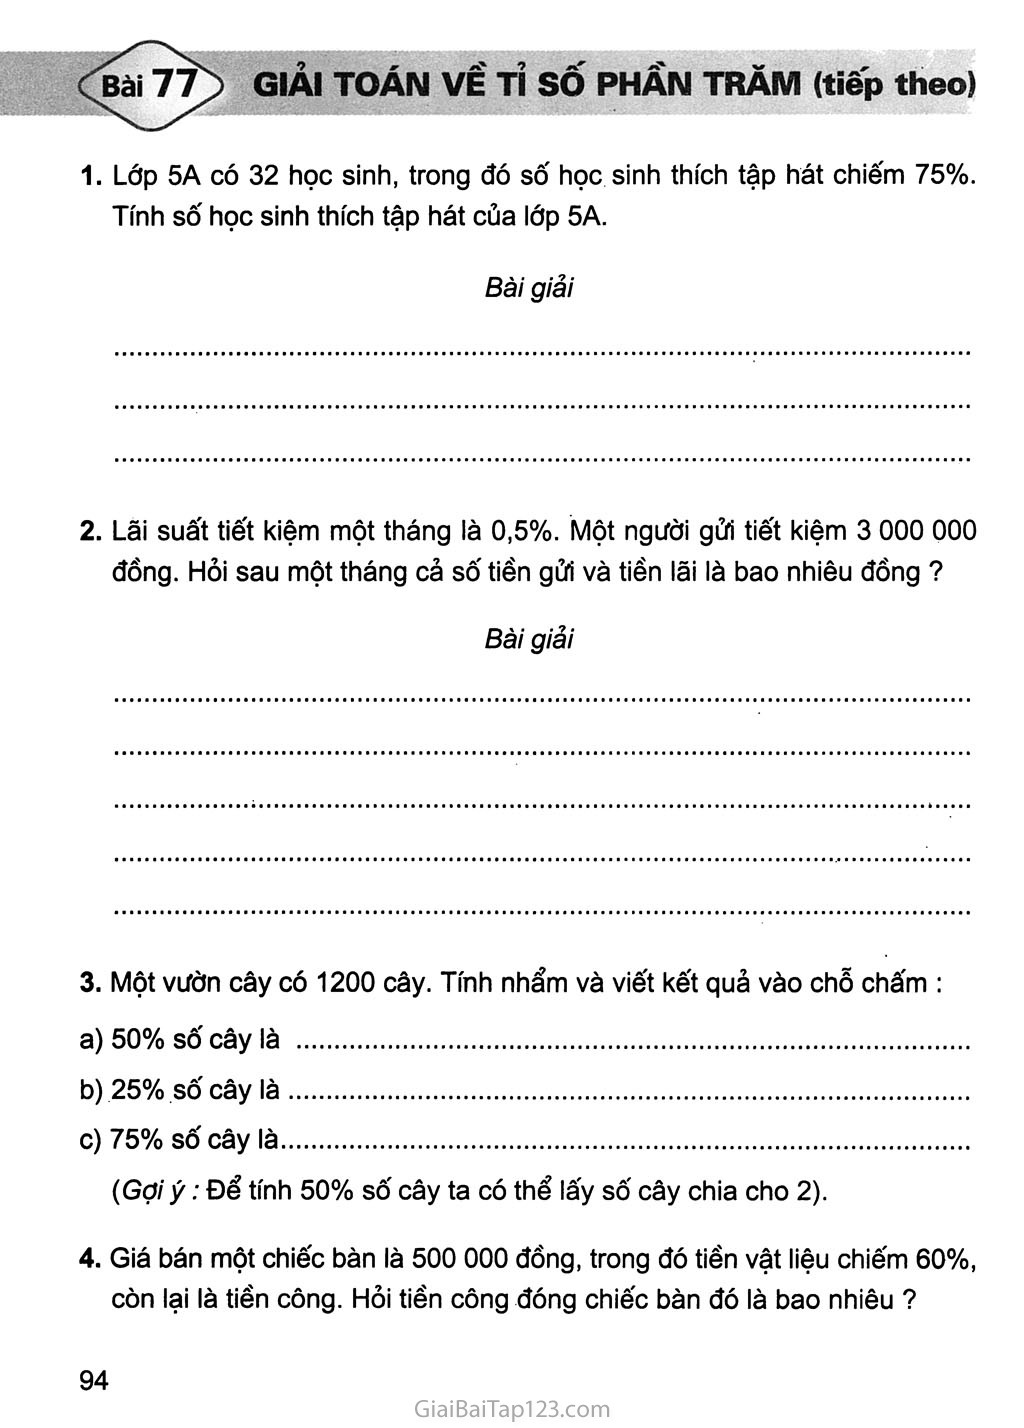 Bài 77. Giải bài toán về tỉ số phần trăm (tiếp theo) trang 1